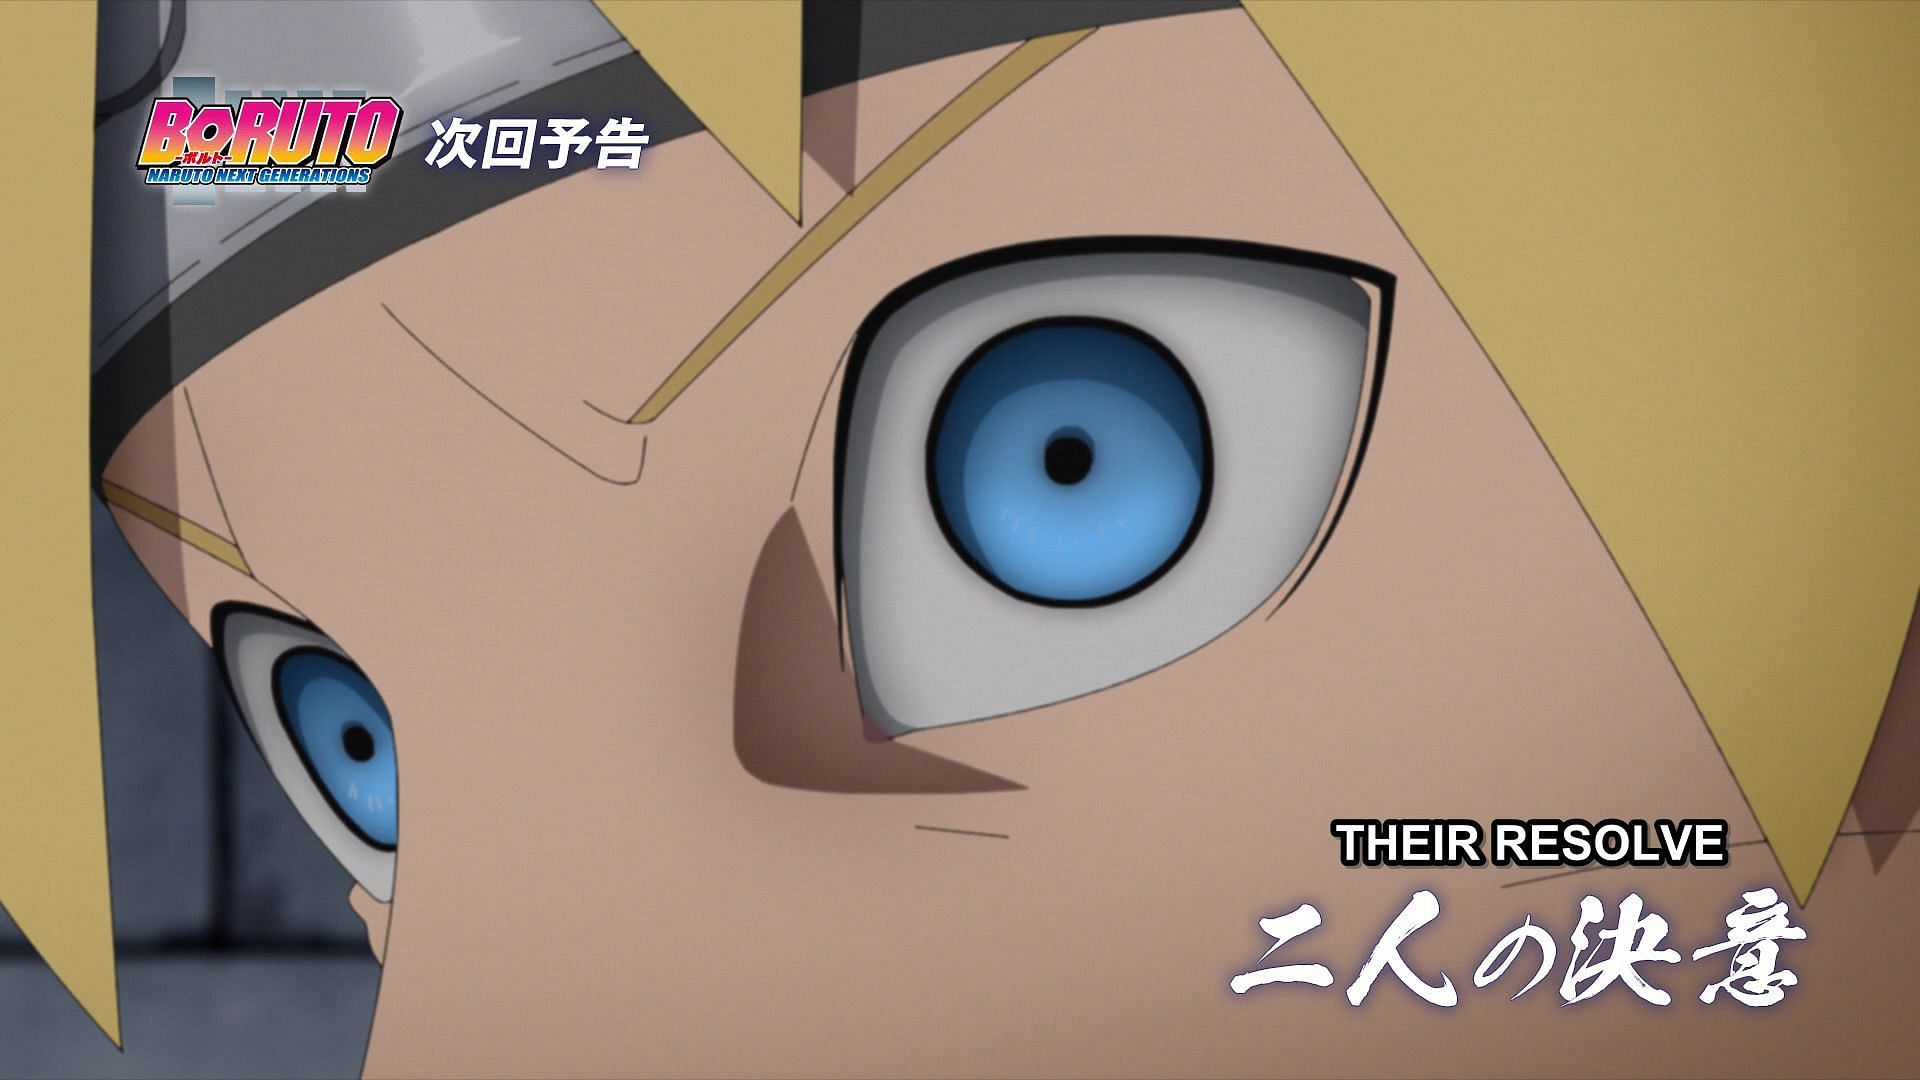 Boruto - The next episode of Boruto: Naruto Next